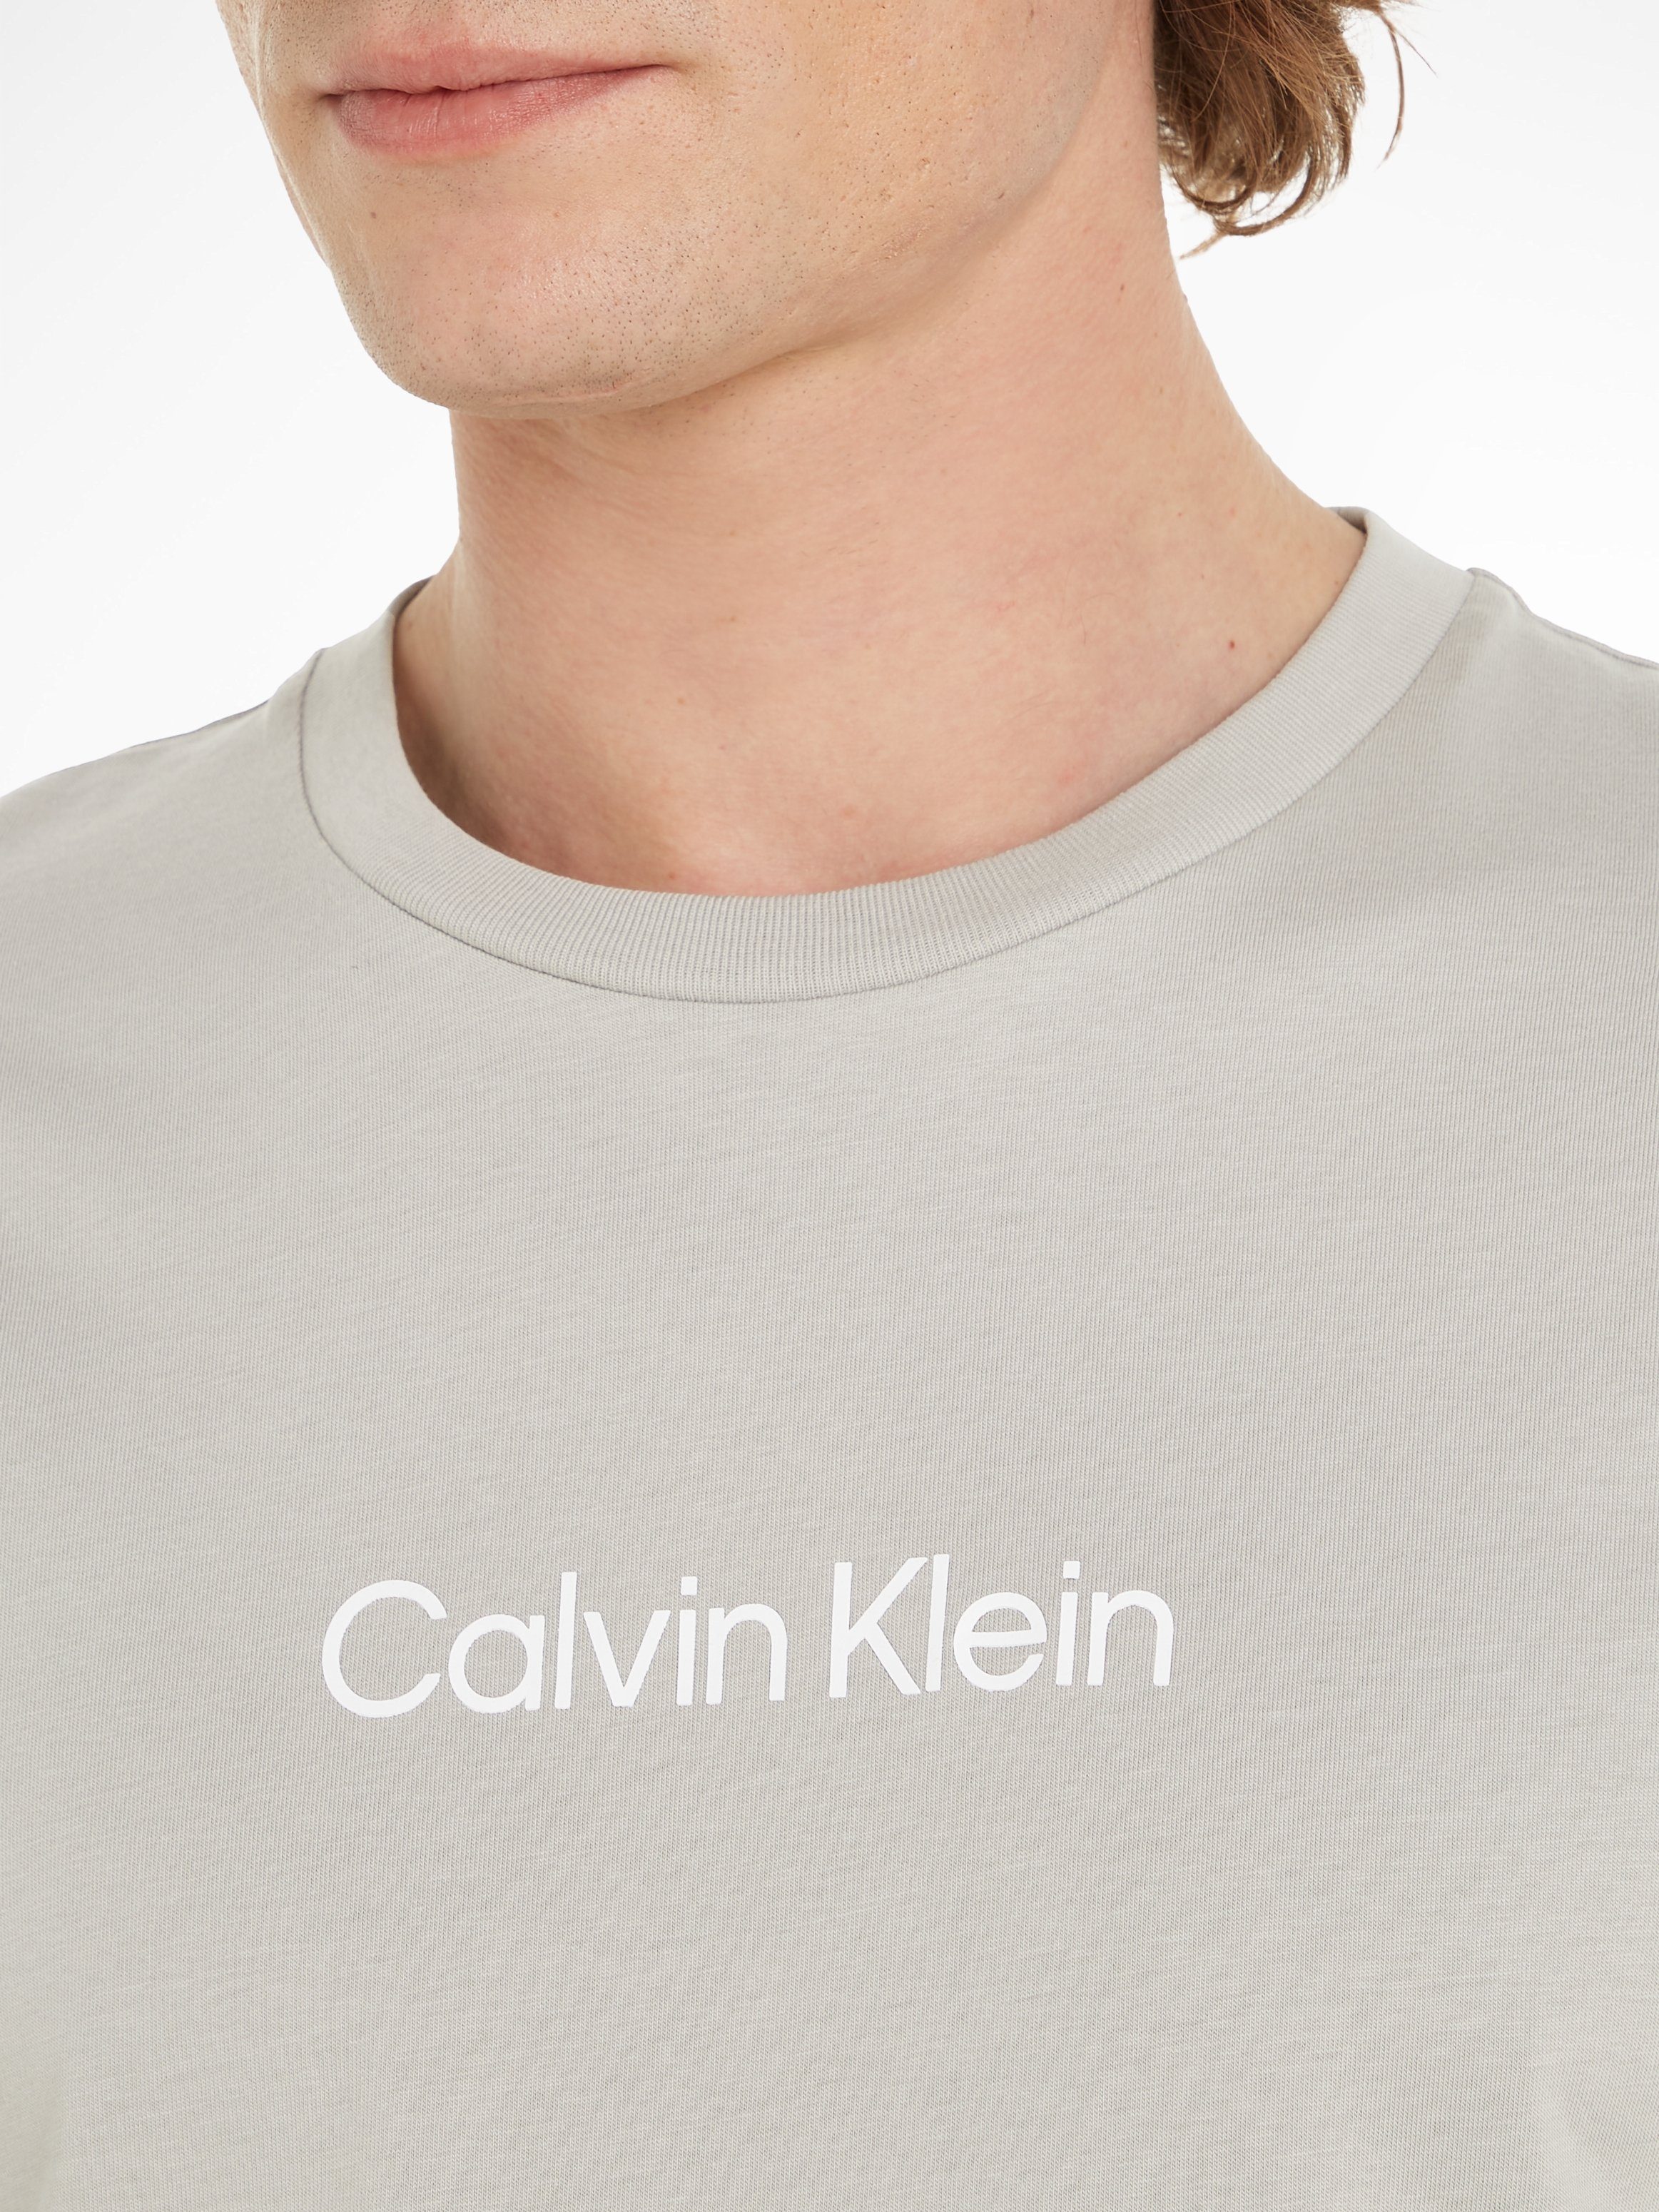 Klein Ghost Gray aufgedrucktem mit LOGO T-Shirt HERO T-SHIRT Calvin Markenlabel COMFORT